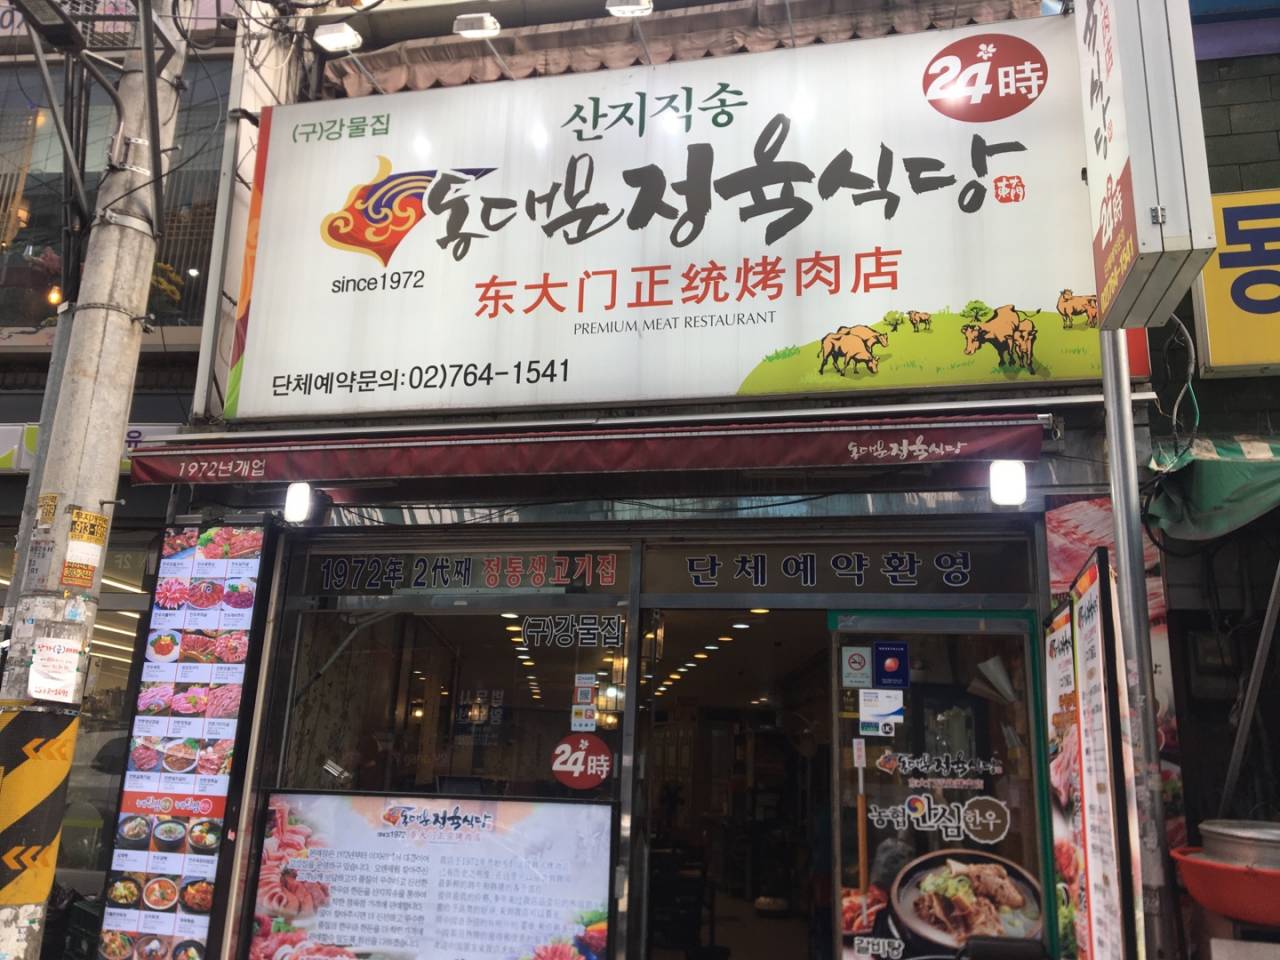 東大門正統烤肉店<br>(동대문정육식당)